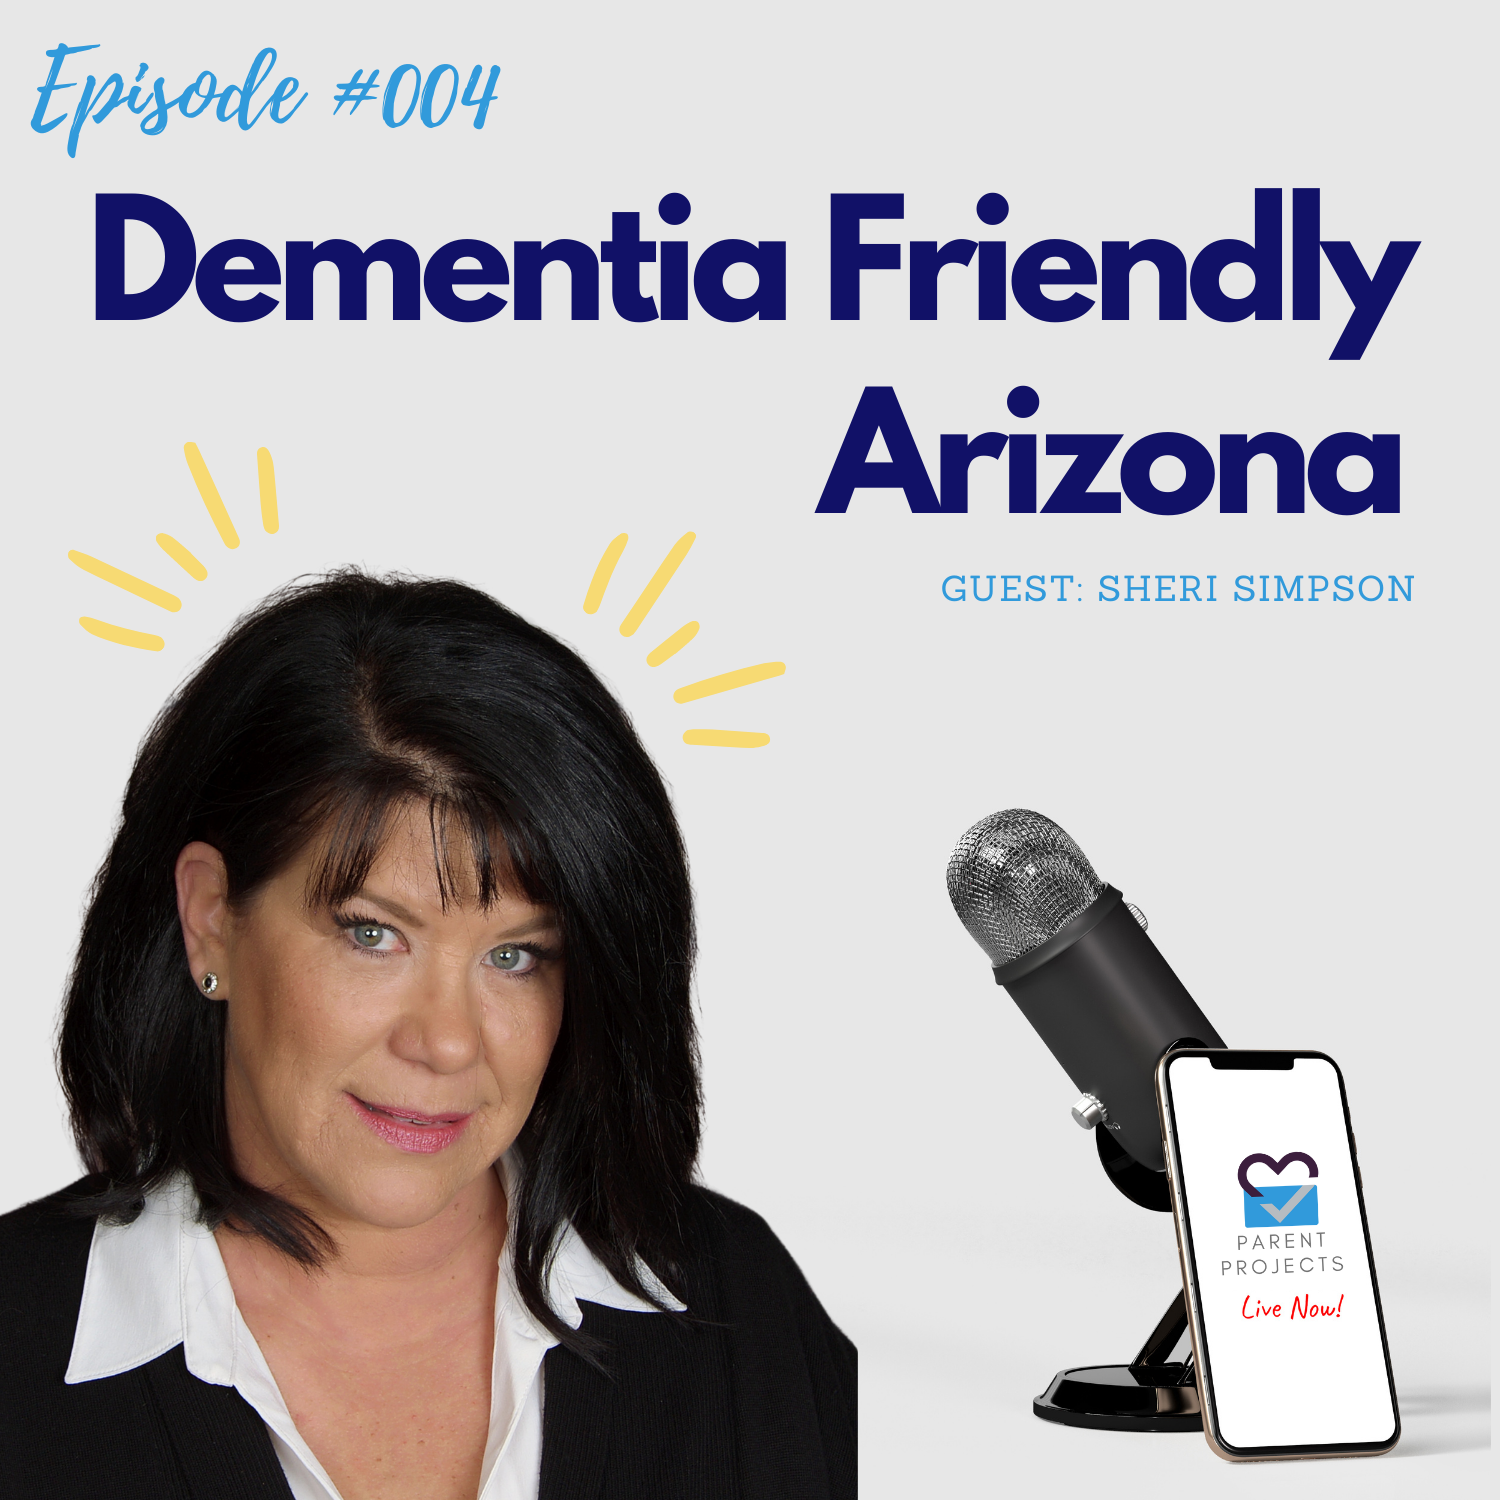 Dementia Friendly Arizona (Sheri Simpson)